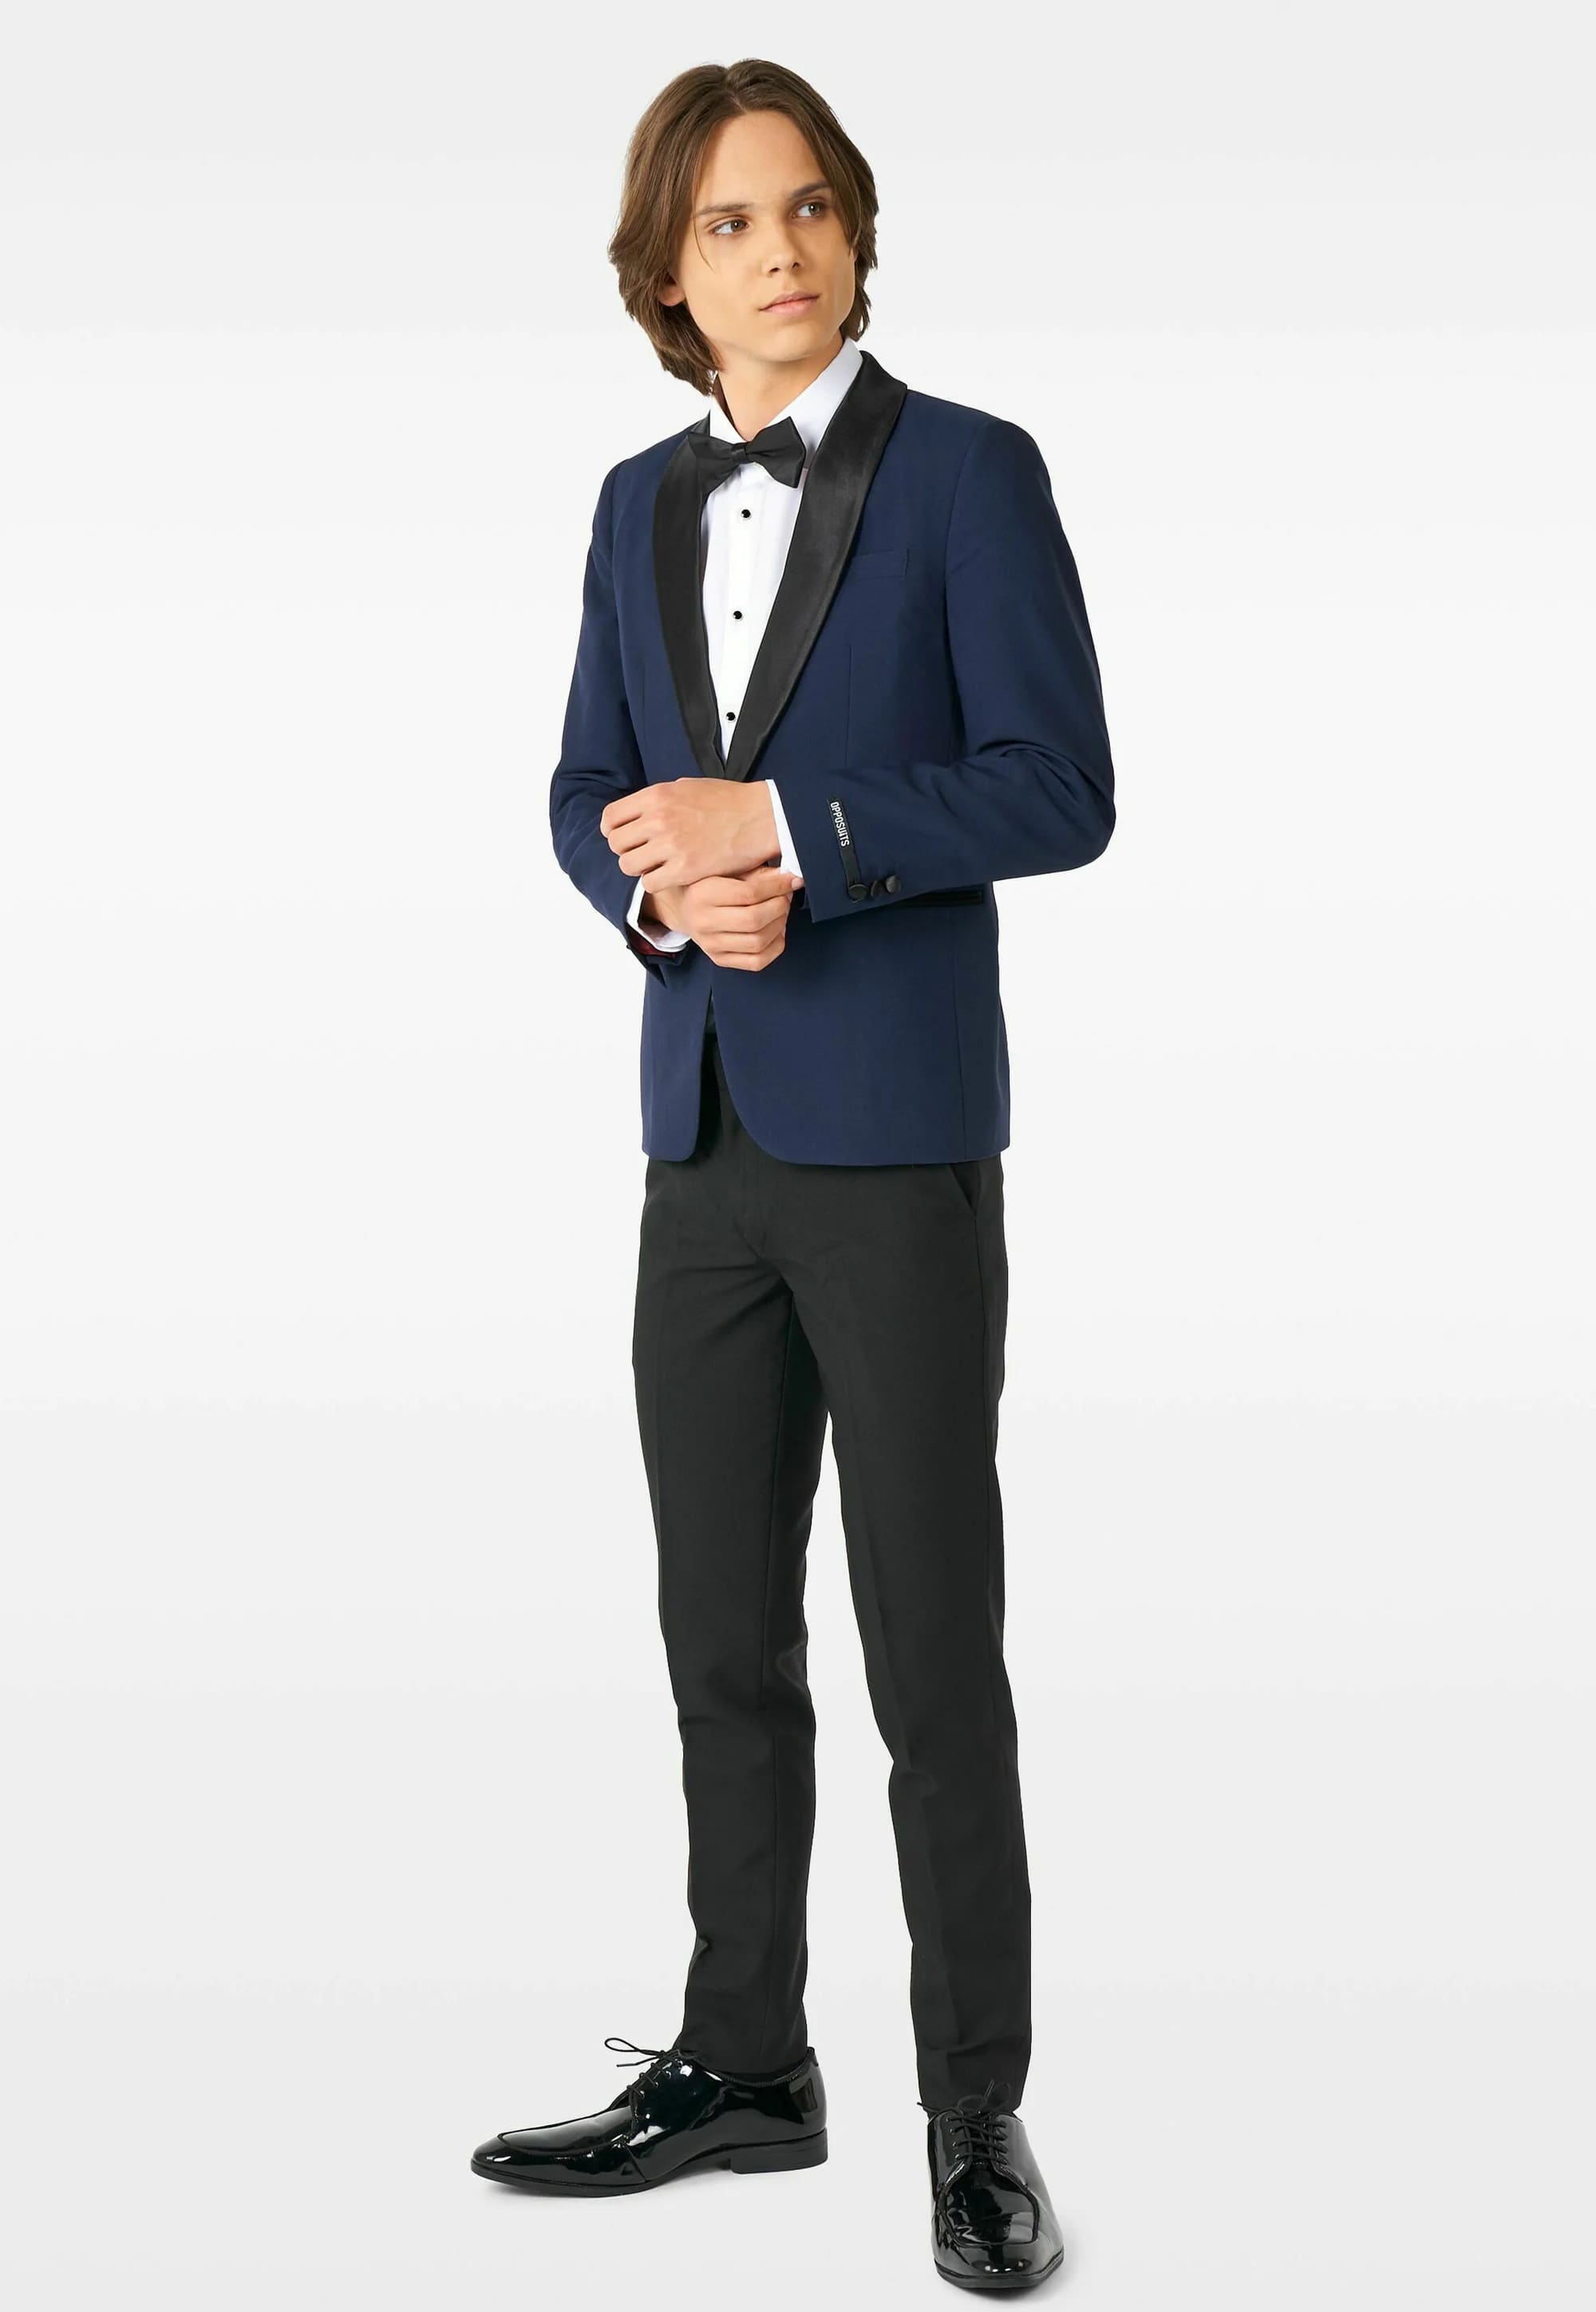 Комплект Opposuits Midnight, 3 предмета, темно-синий/черный комплект одежды chadolls пиджак и брюки нарядный стиль размер 110 синий